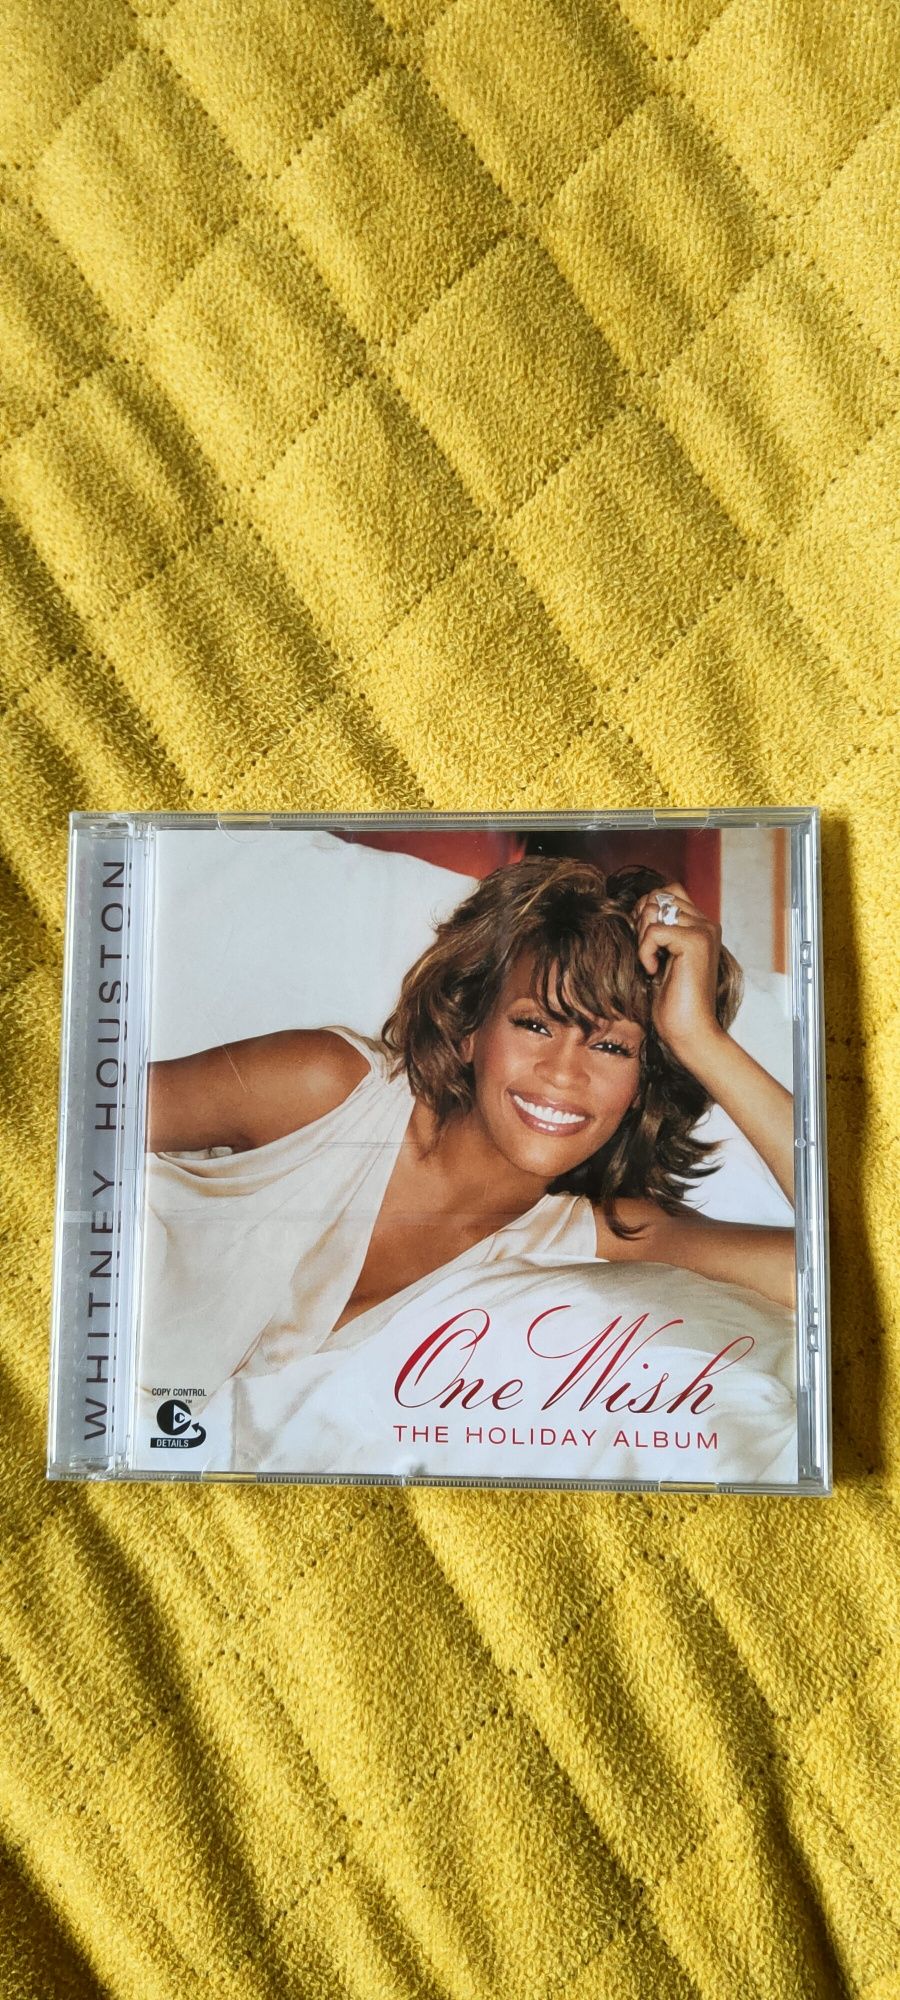 Płyta CD z muzyką Whitney Houston "One Wish The Holiday Album"